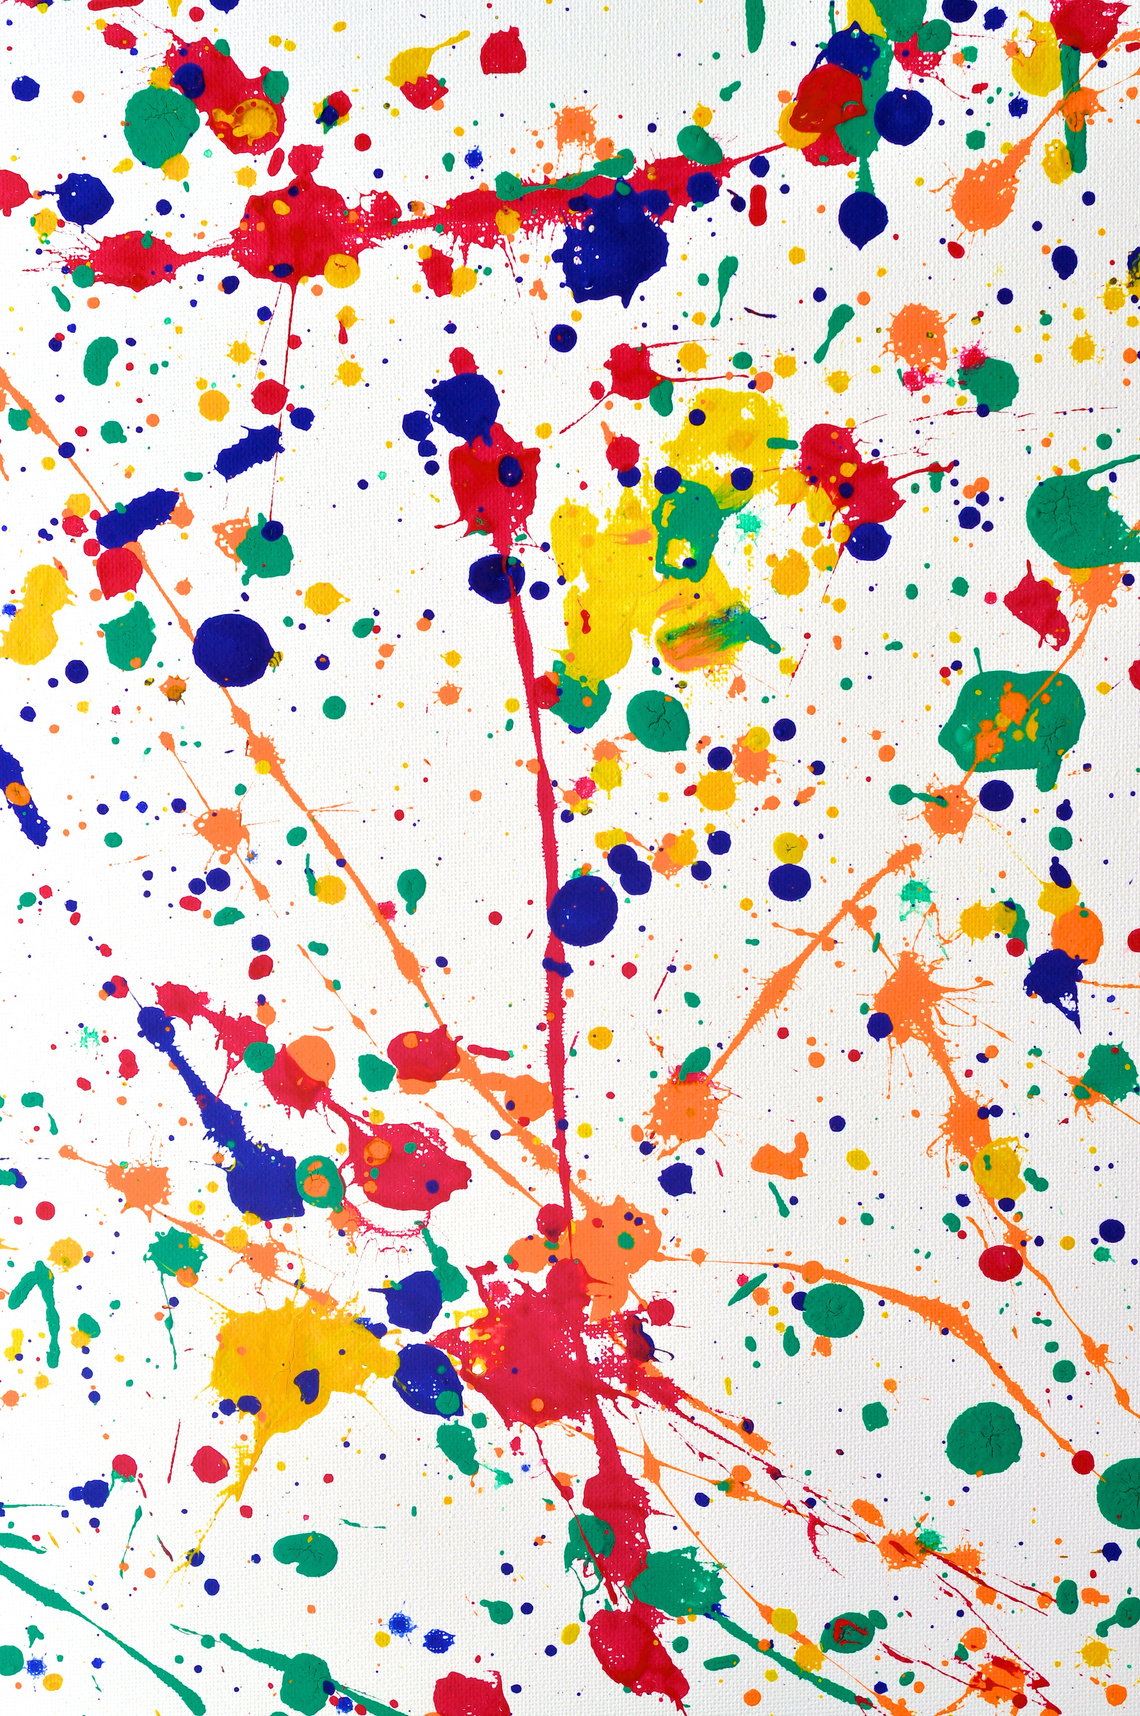 Preschooler art with splatters inspired by Jackson Pollock